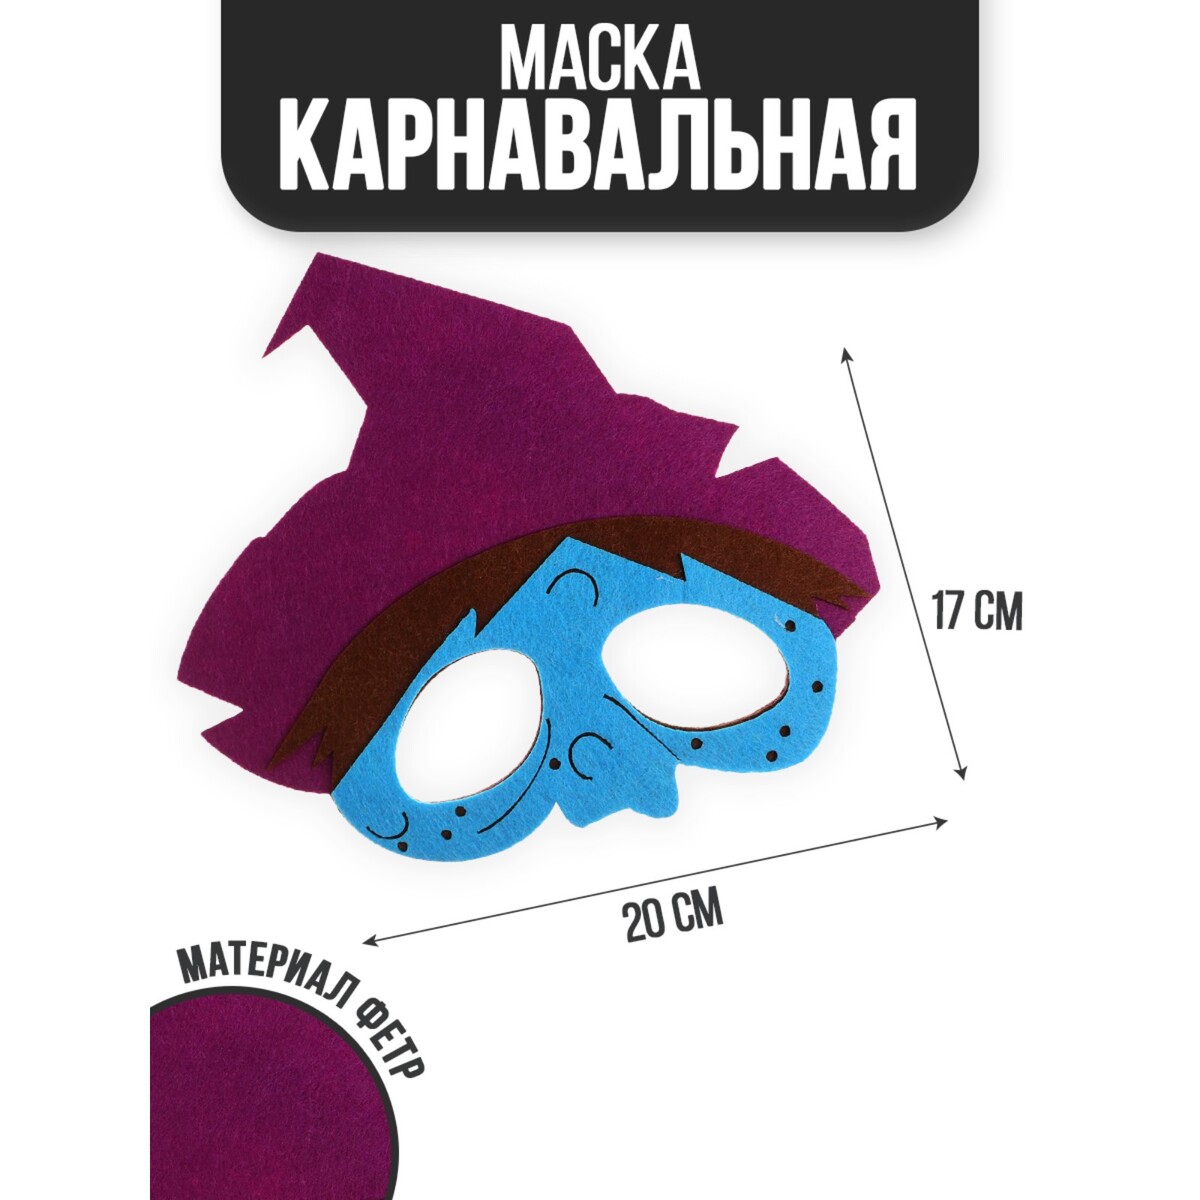 Маска очки маска для езды на мототехнике стекло сине фиолетовый хамелеон бело черные ом 19